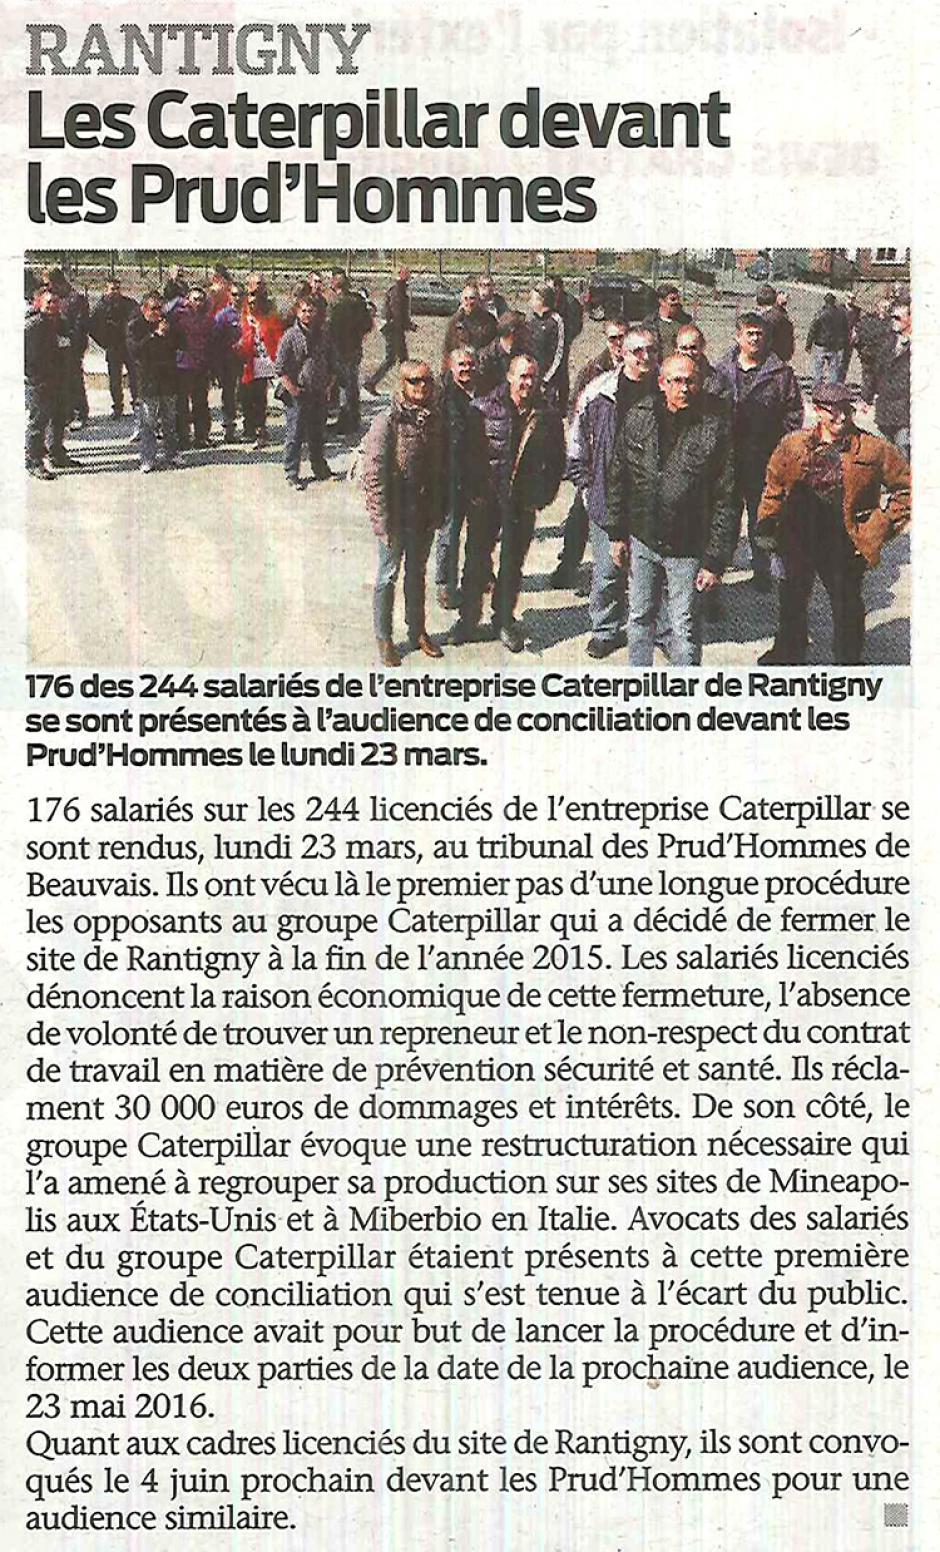 20150325-BonP-Rantigny-Les Caterpillar devant les prud'hommes